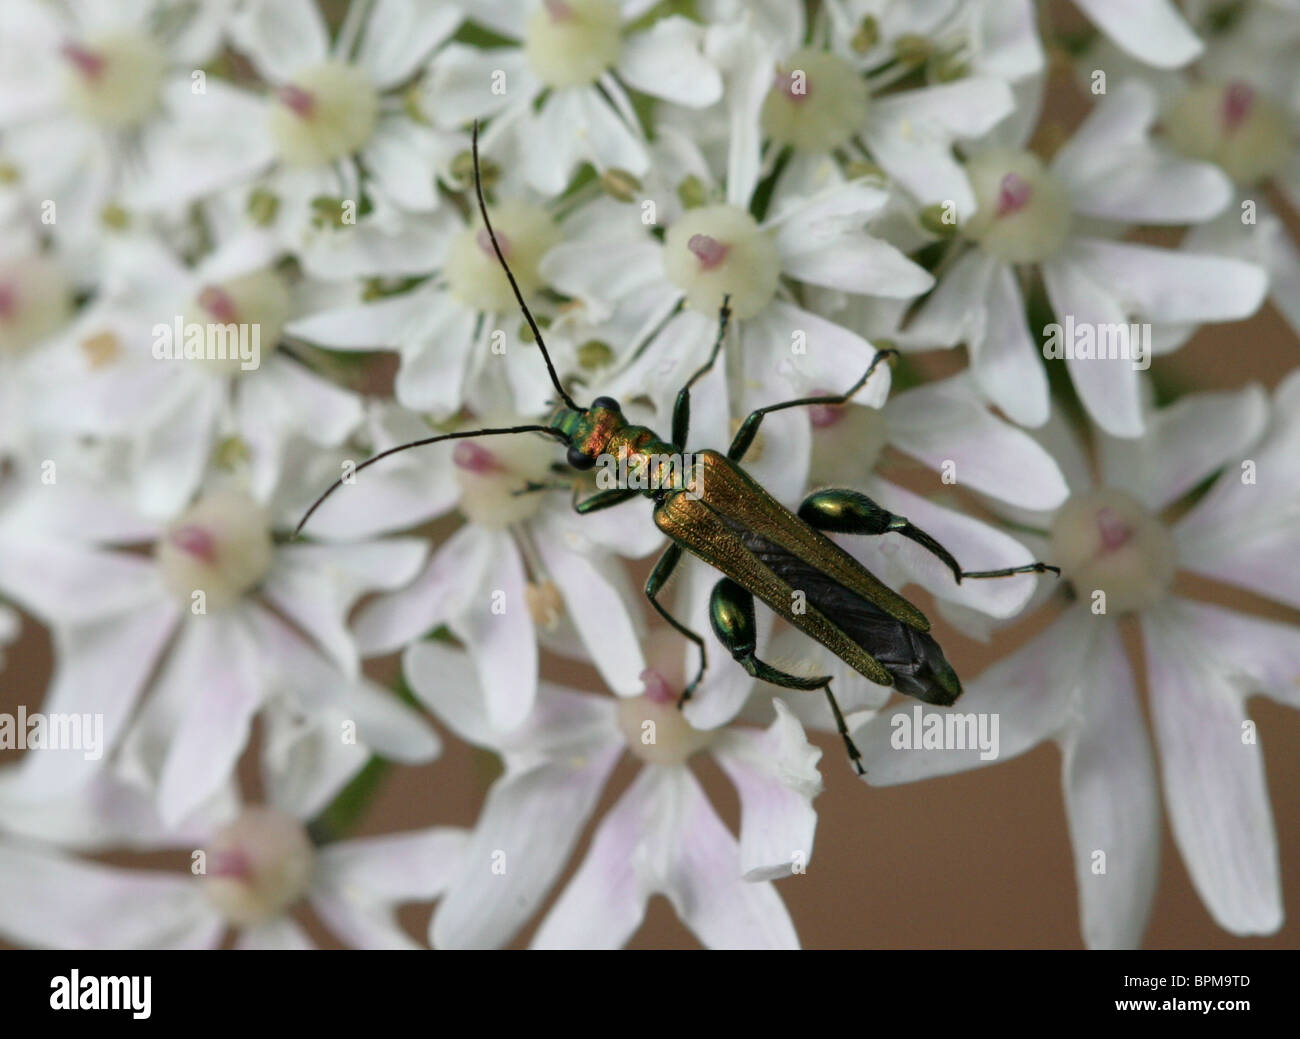 Male Thick Legged Flower Beetle, Oedemera nobilis, Oedemeridae, on Hogweed Stock Photo